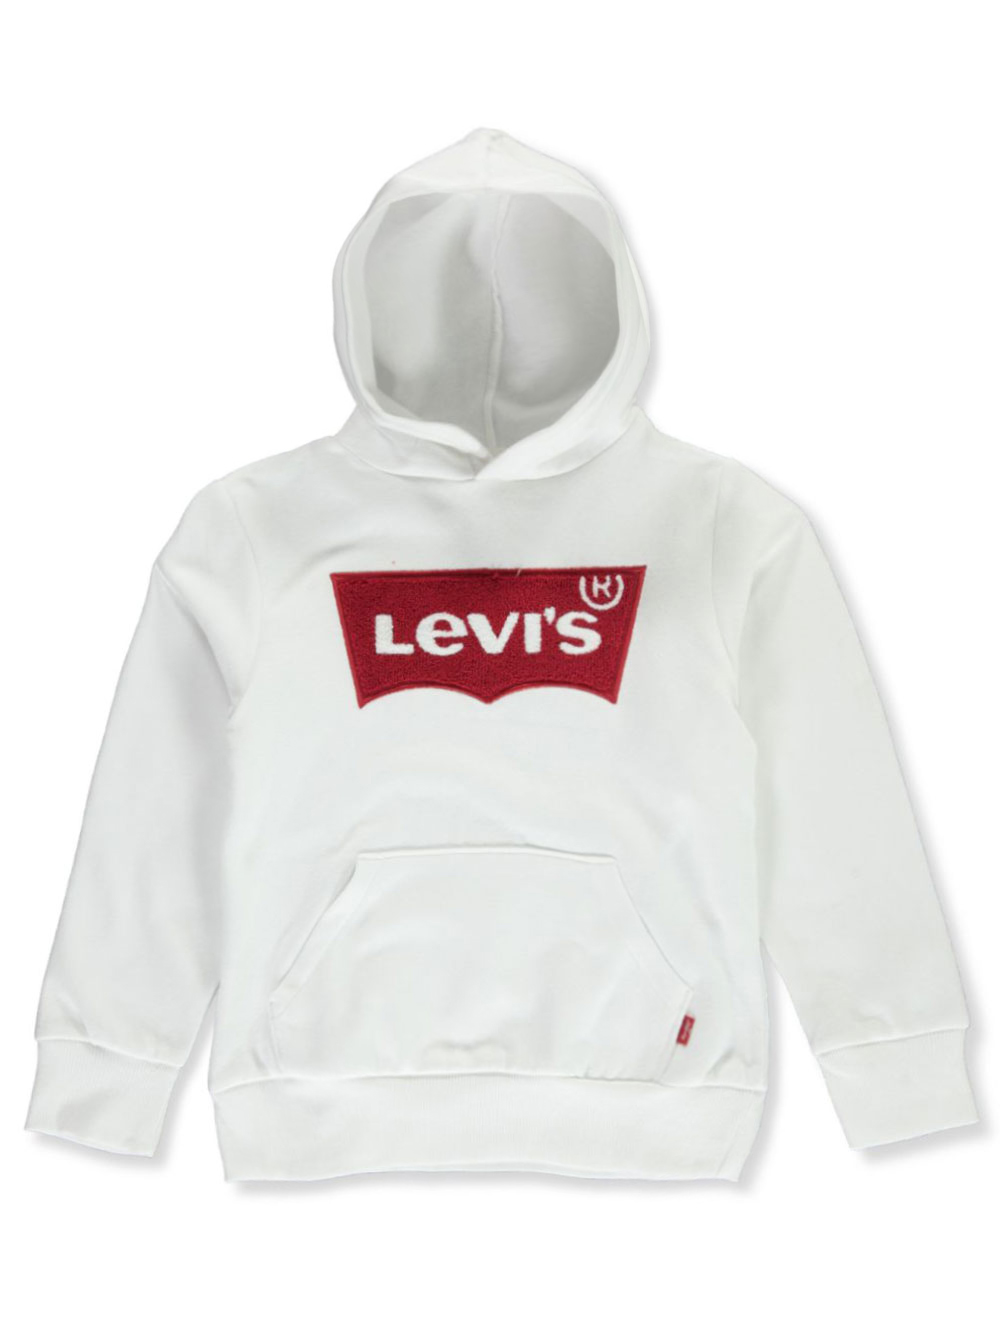 levis jumper boys Cheaper Than Retail 